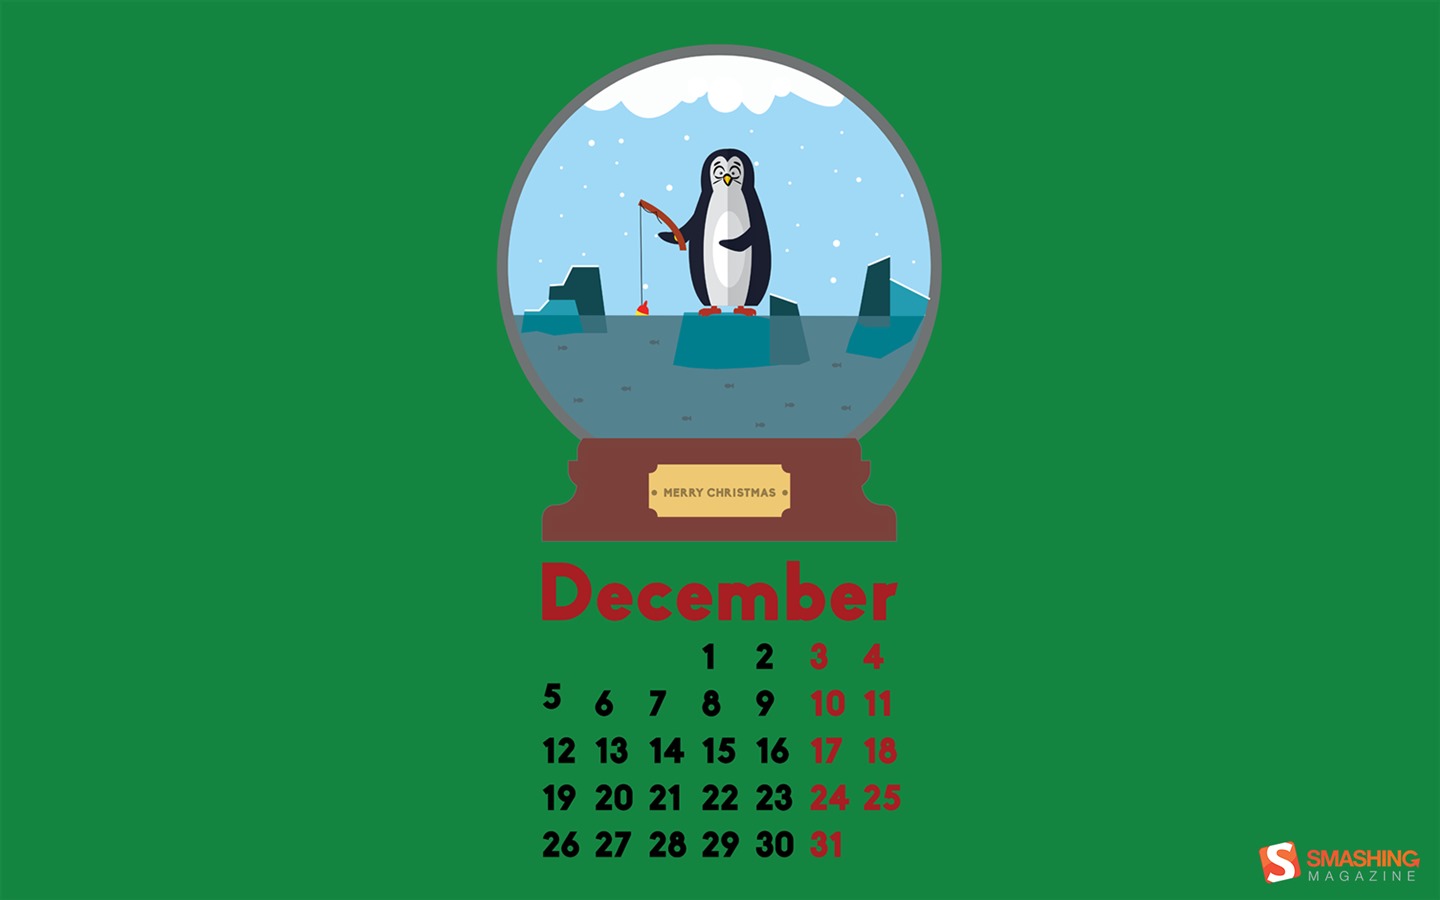 December 2016 Christmas theme calendar wallpaper (2) #8 - 1440x900